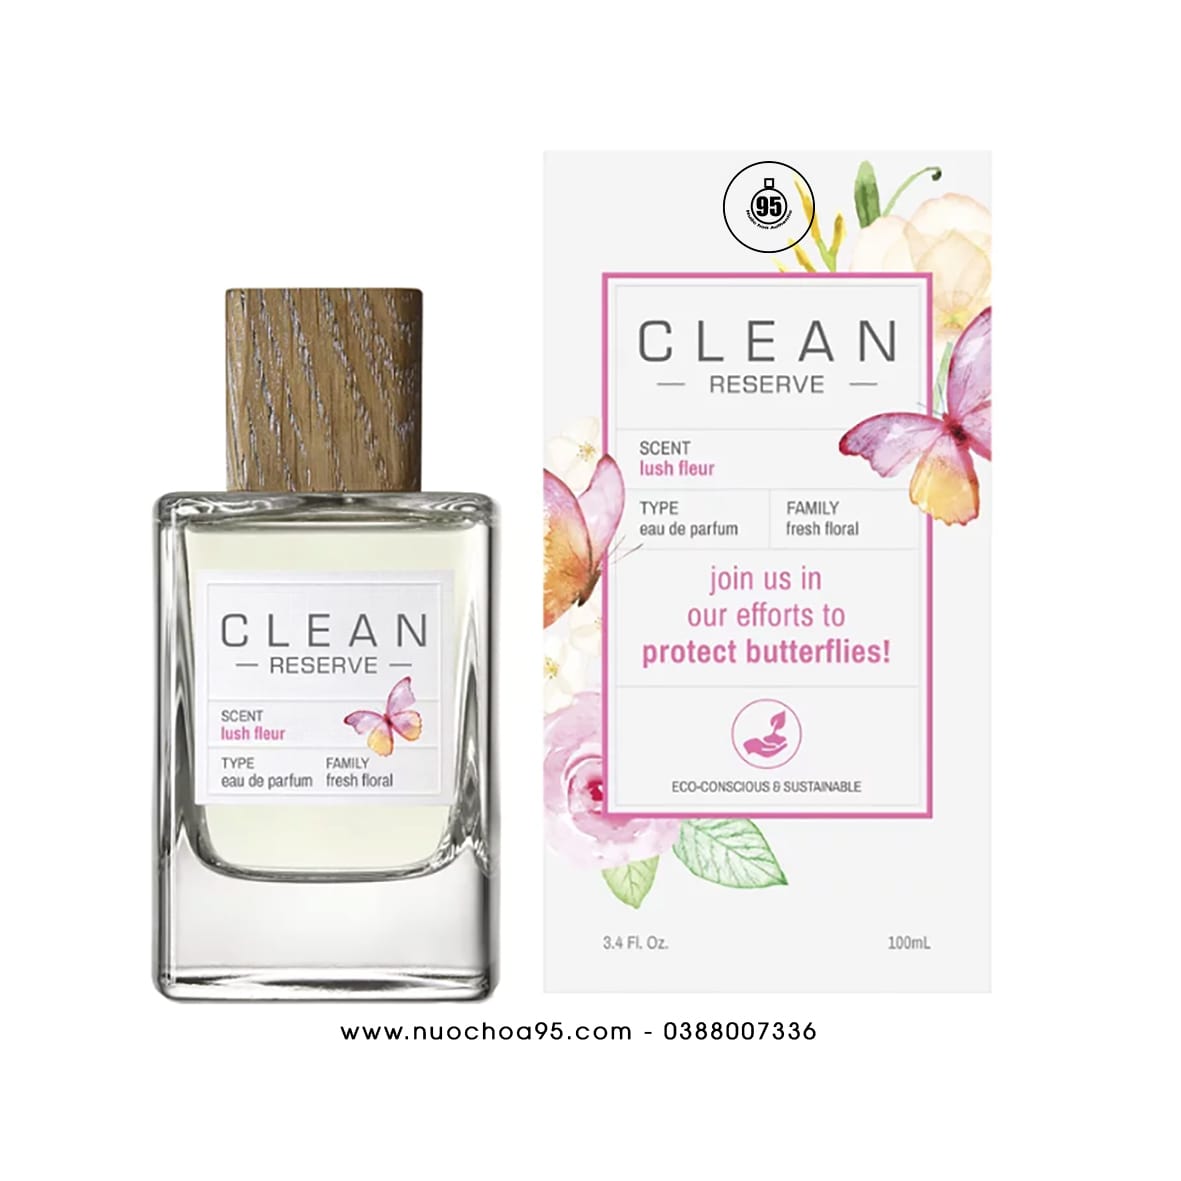 Nước hoa Clean Lush Fleur